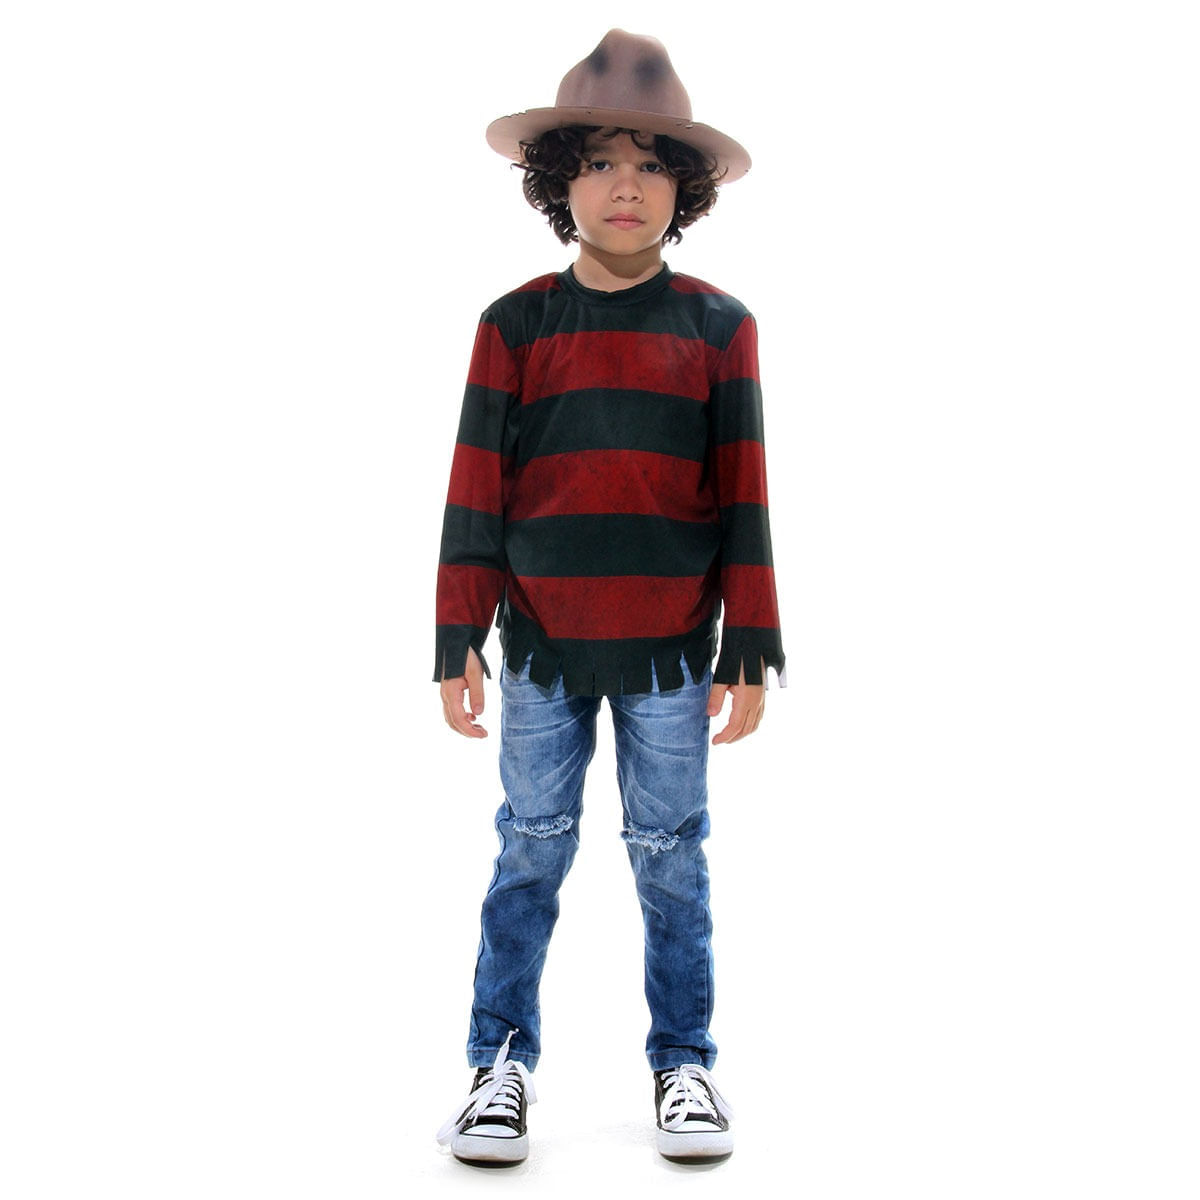 Fantasia Freddy Krueger Infantil - Halloween P / UNICA